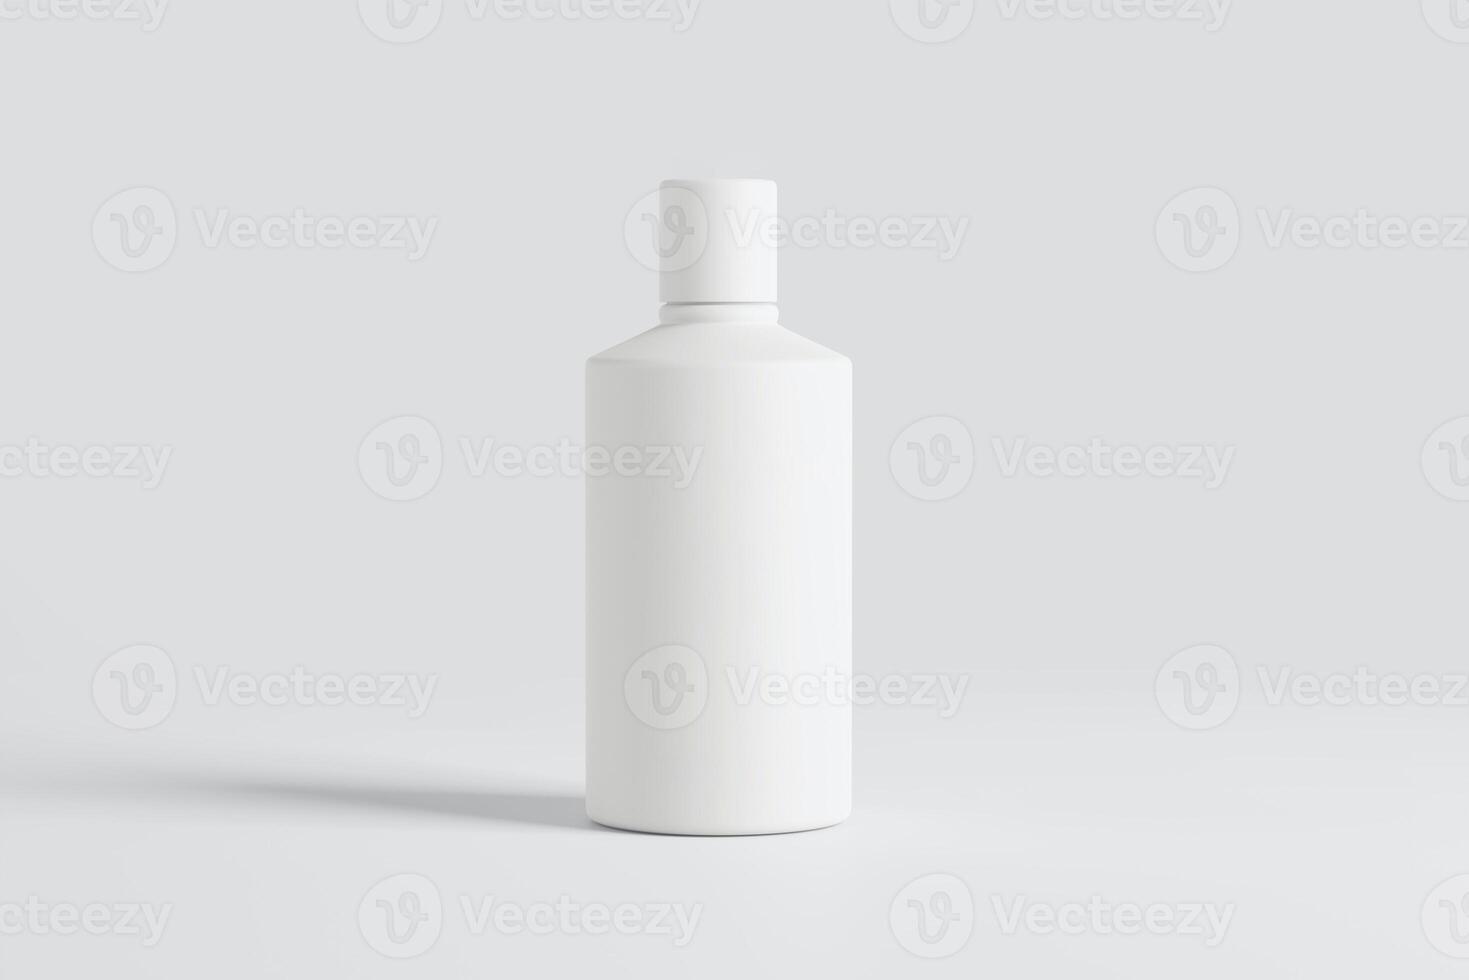 Weiß leer sprühen Flasche Attrappe, Lehrmodell, Simulation foto